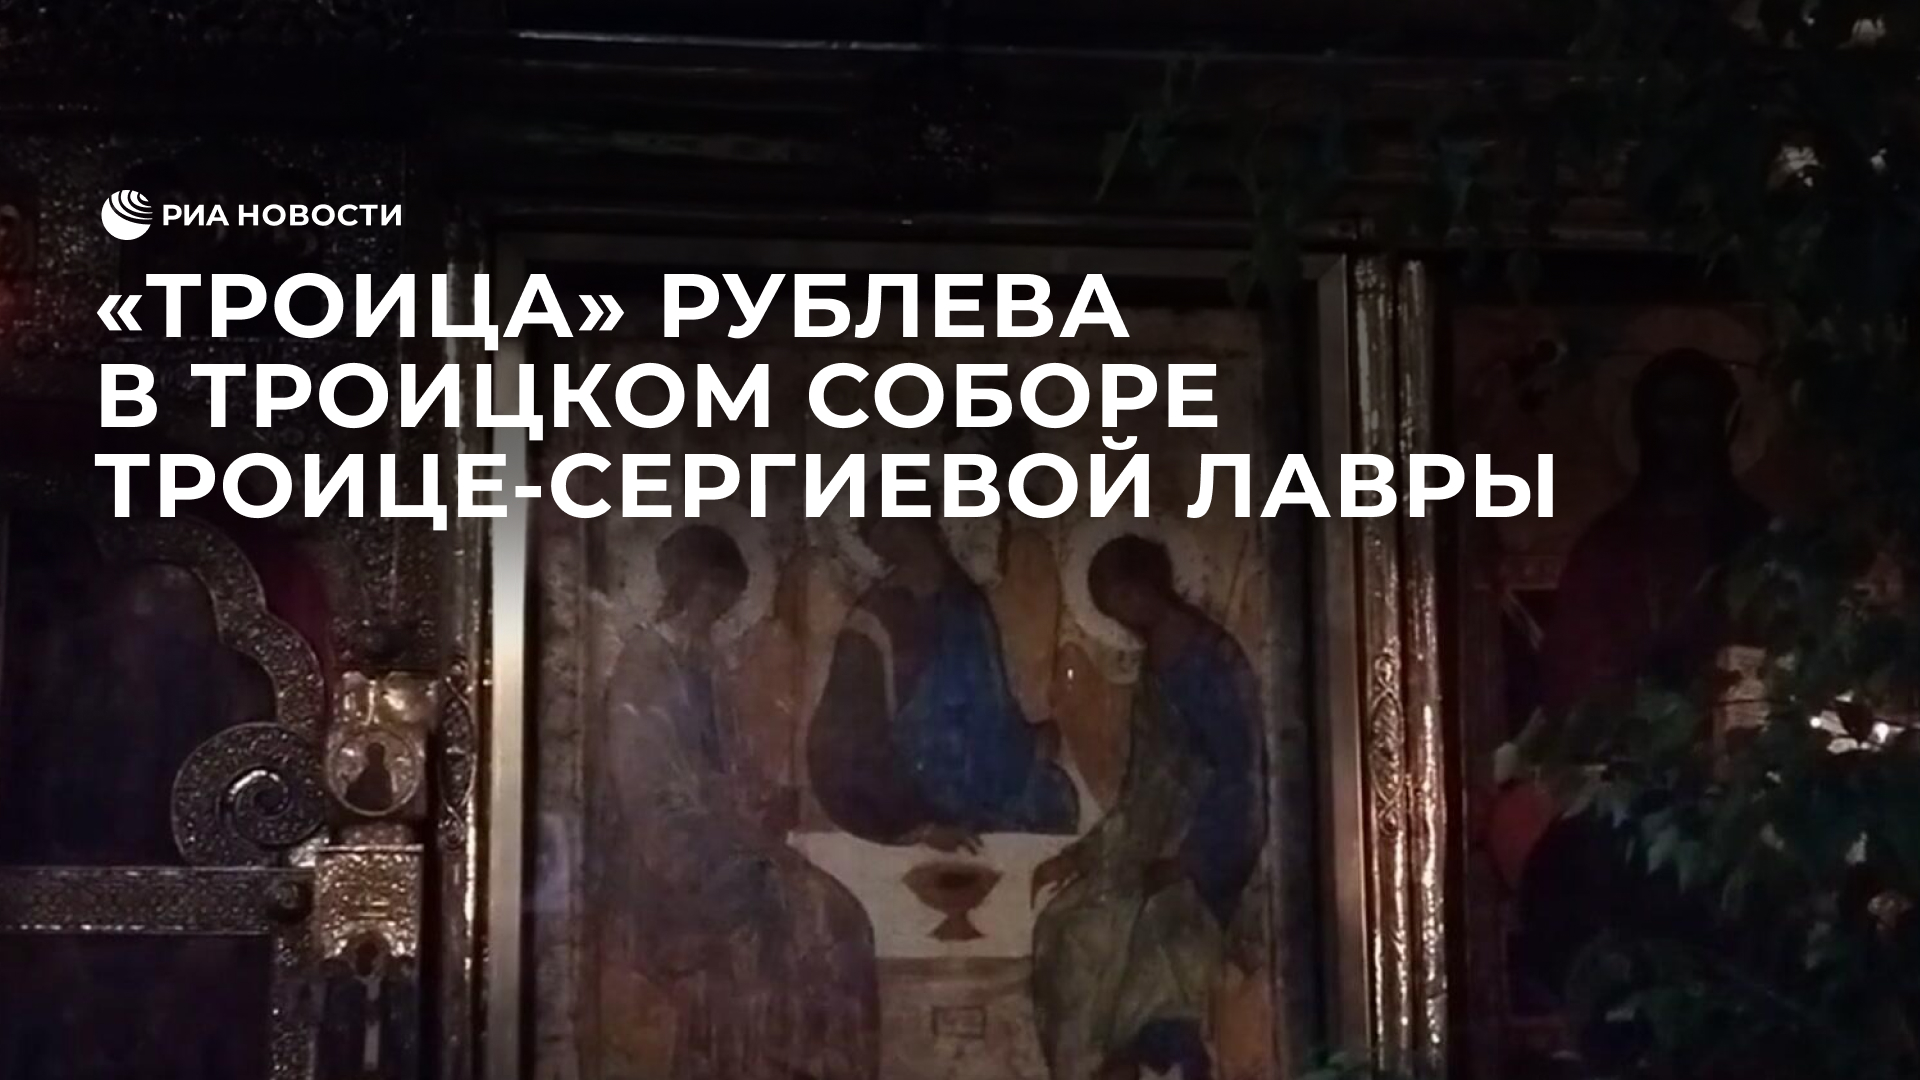 "Троица" Рублева в Троицком соборе Троице-Сергиевой лавры